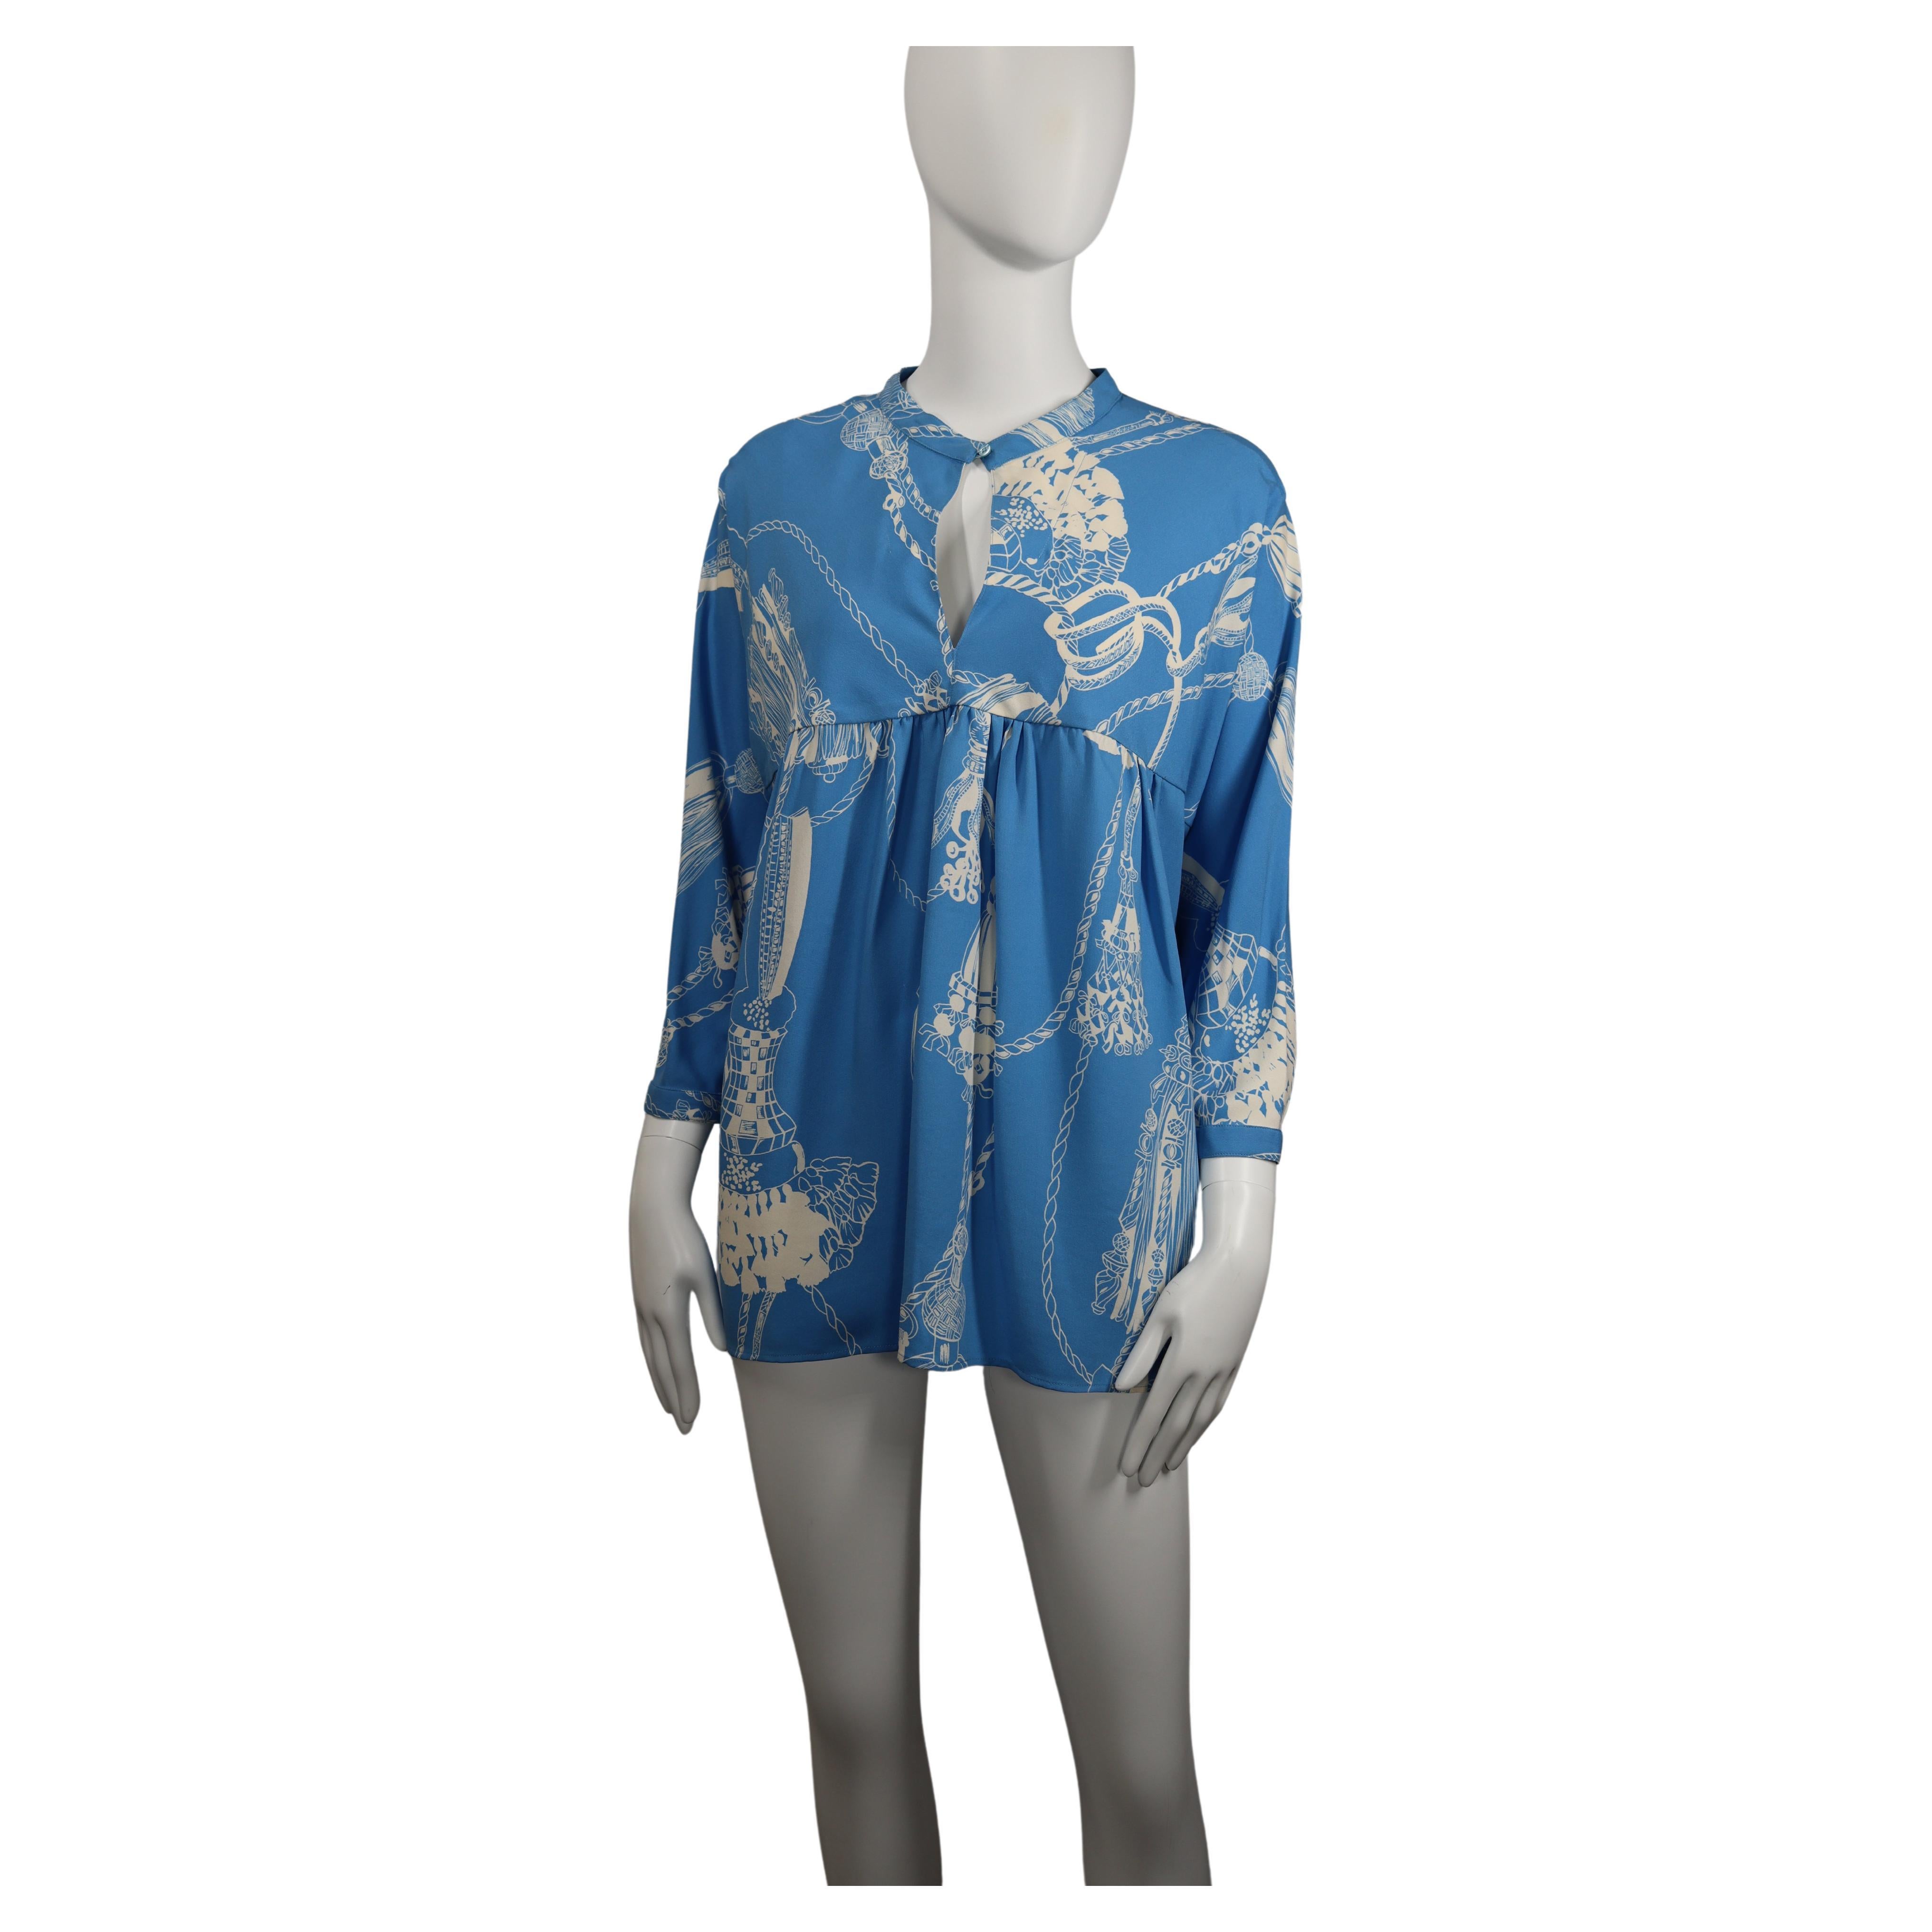 Hermès Blue Tassels Print Shirt